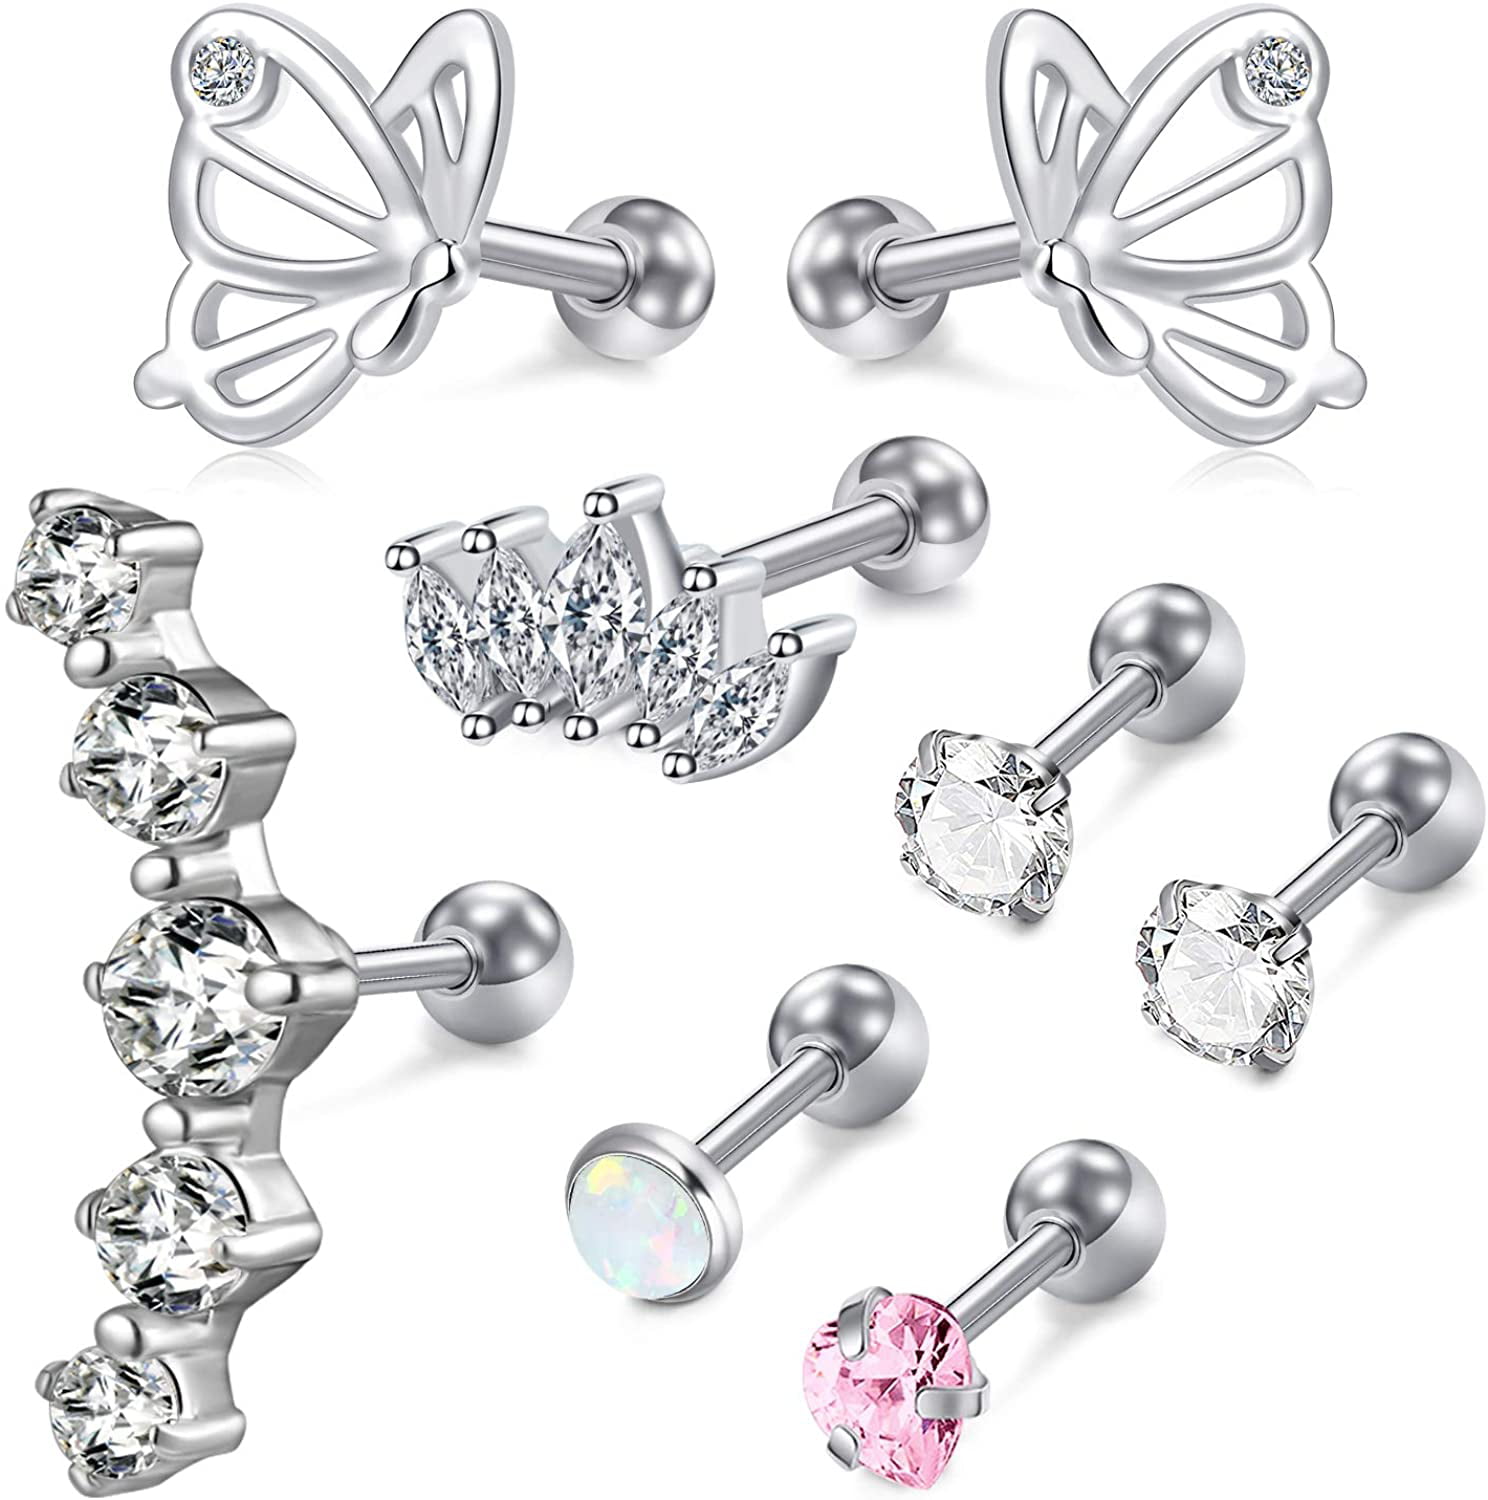 Longita 16G Tragus Cartilage Earrings Studs Stainless Steel Earlobe Forward Helix Piercing Jewelry for Women Screwed Back Diamond Butterfly Stud Earring 6mm 1/4 Silver Pack 